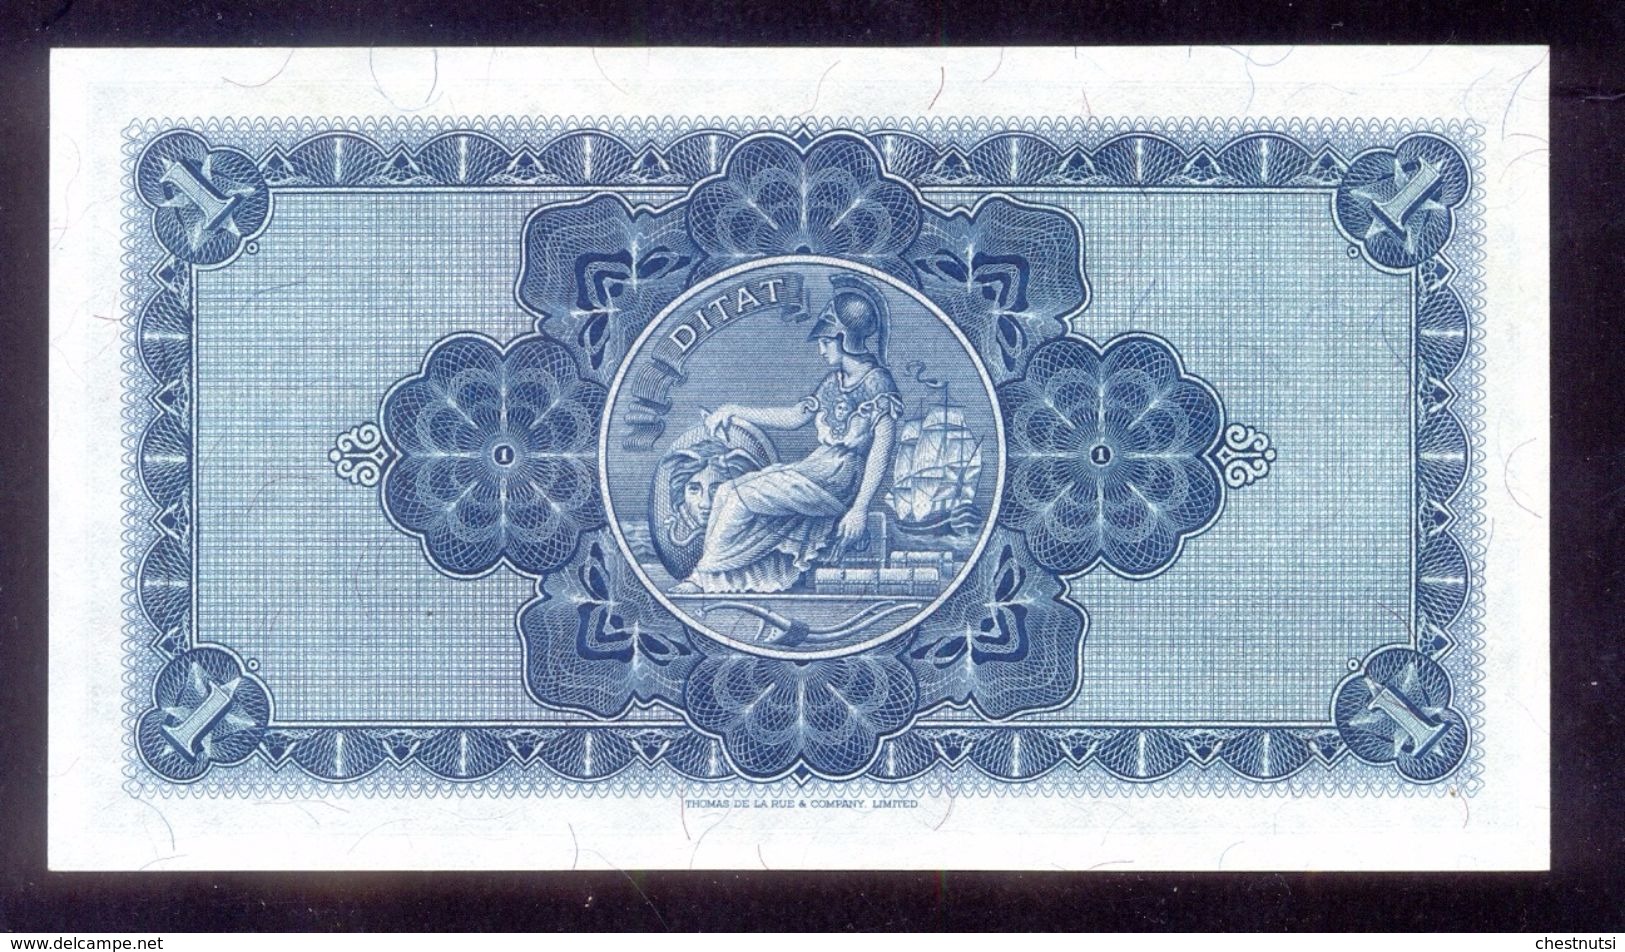 UK Great Britain Scotland BRITISH LINEN BANK 1 Pound 1961 P62 UNC - 1 Pound